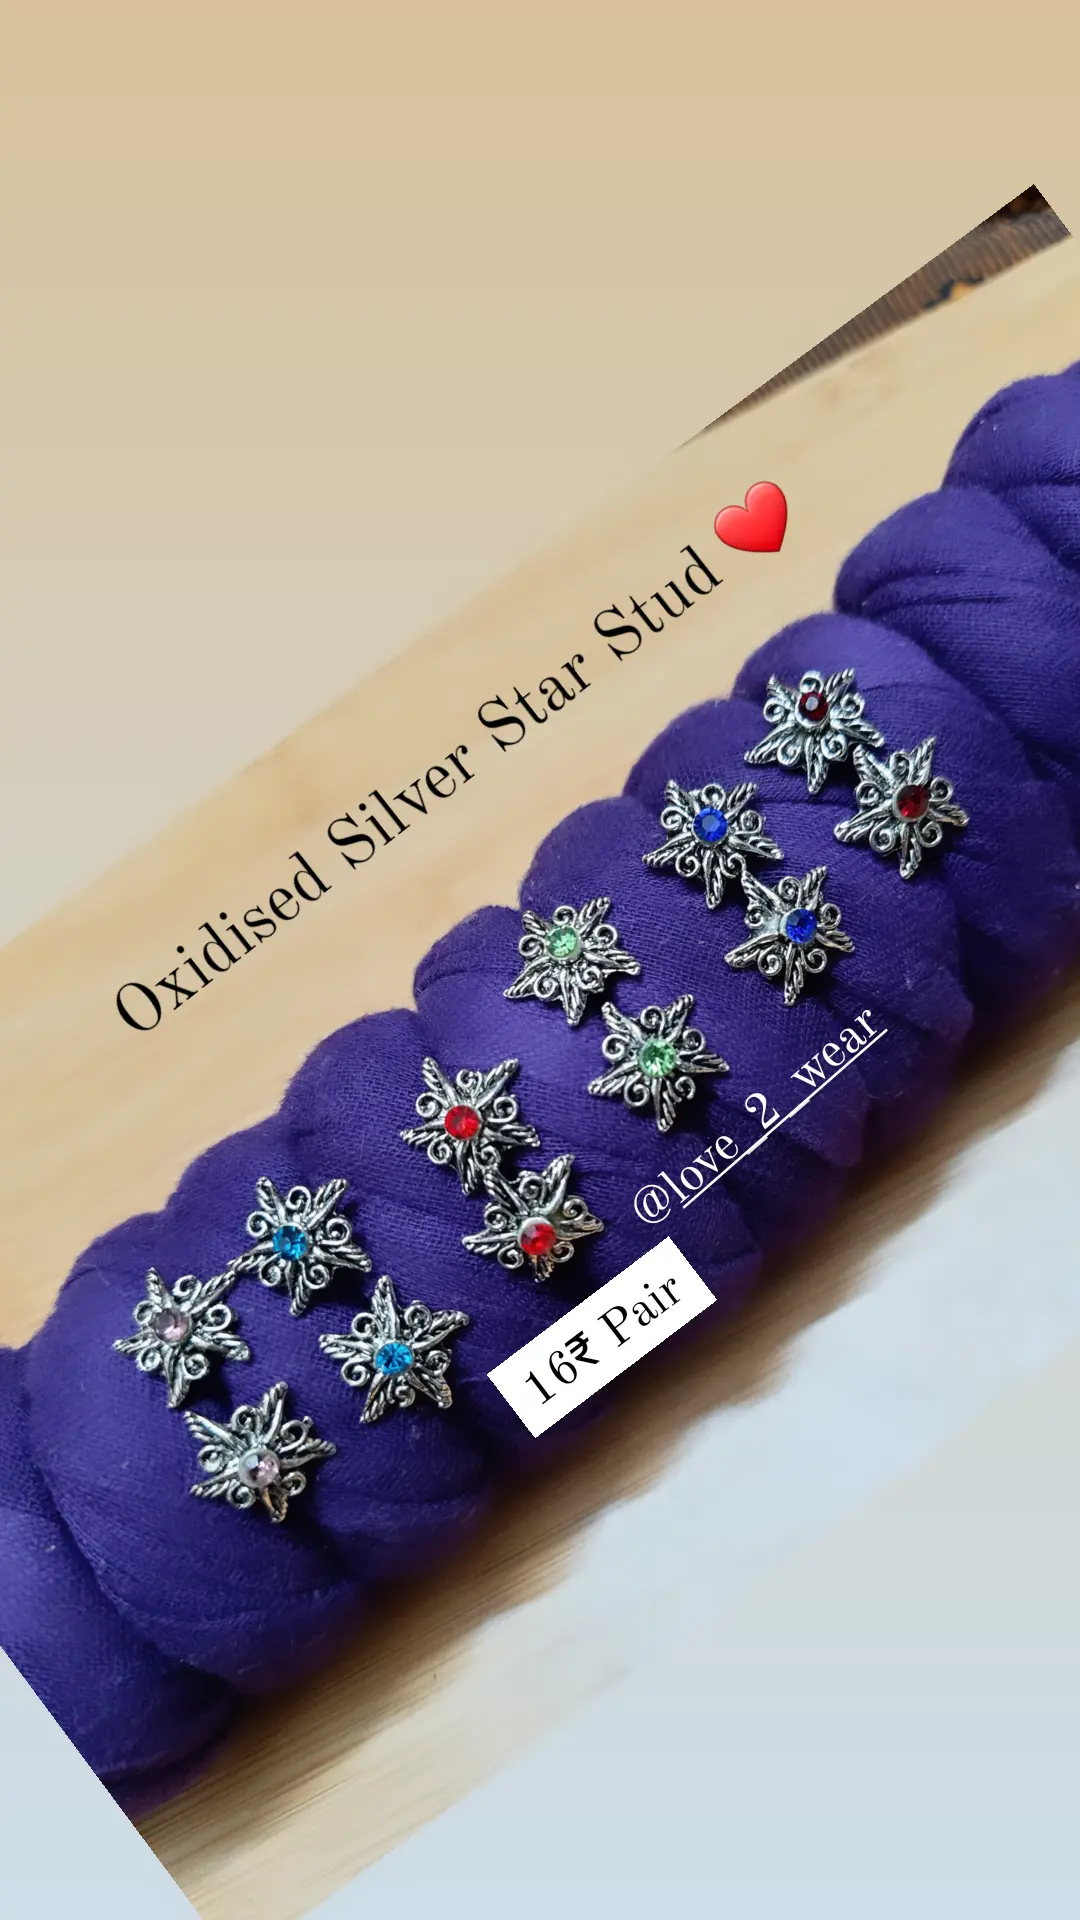 Oxidised Silver Star Stud (pair) uploaded by Fashion_jewel_treasury on 2/10/2022